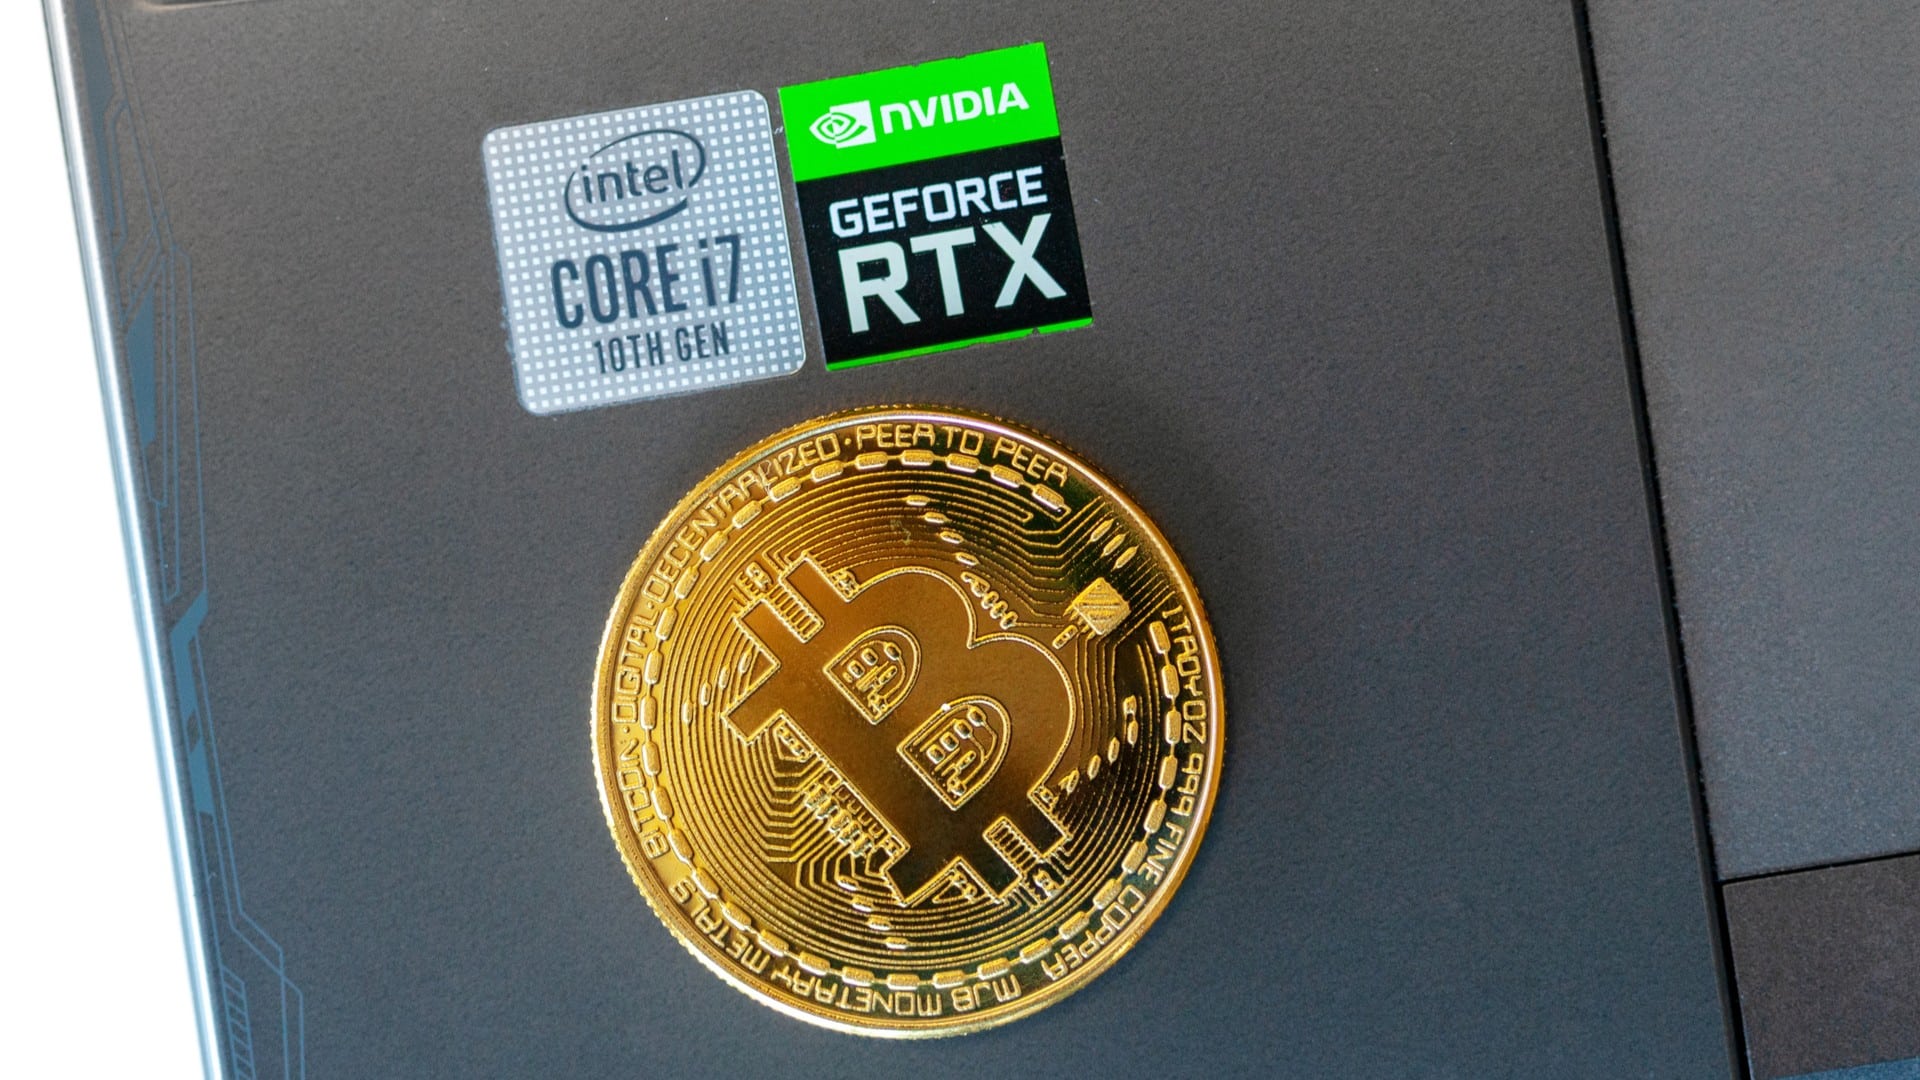 Bitcoin sobre computador com símbolo da Nvidia e Intel próximos